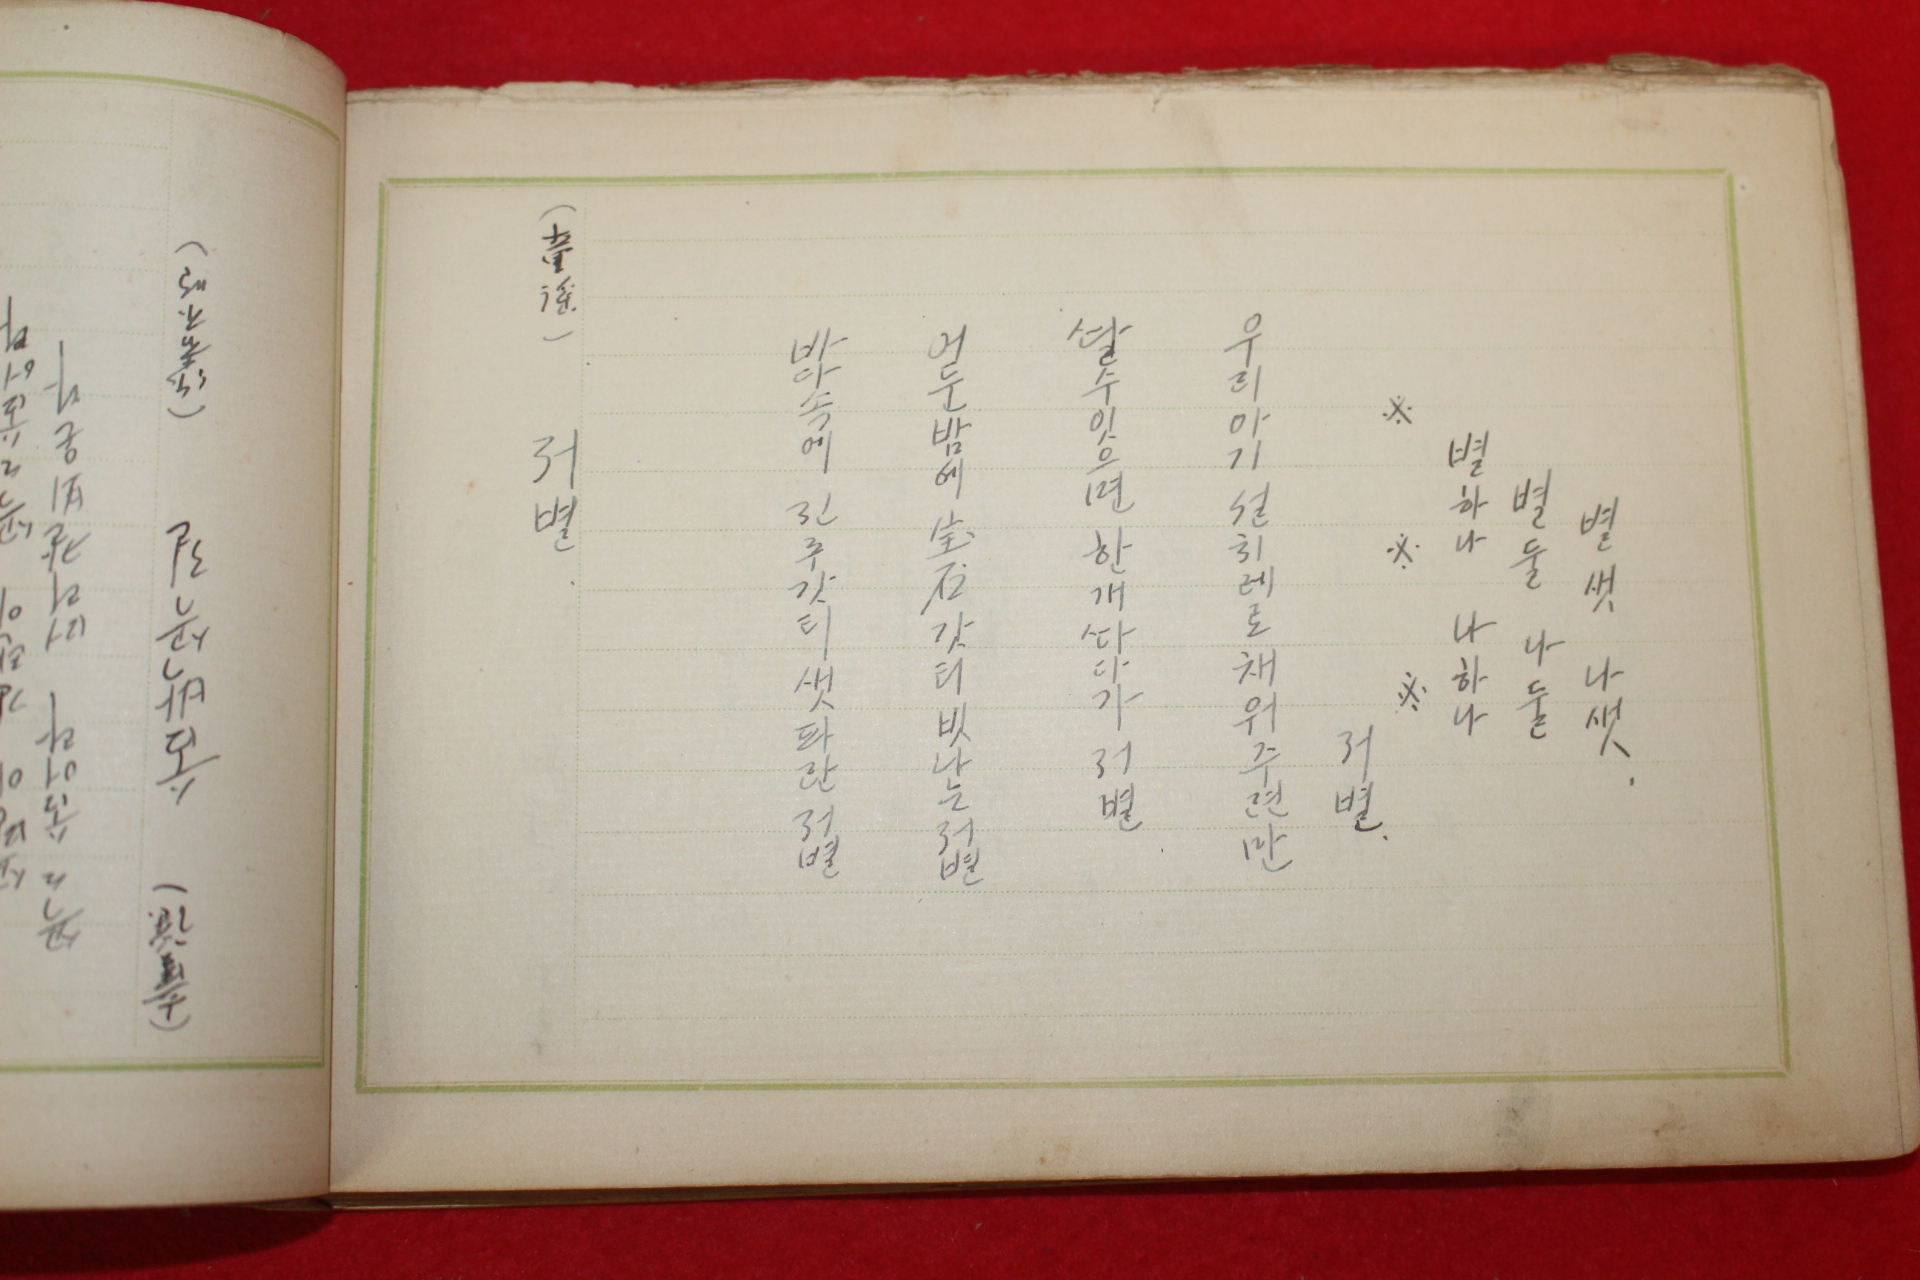 1933년 김종석(金宗錫) 미발간원고본 조선민요,조선동요선집